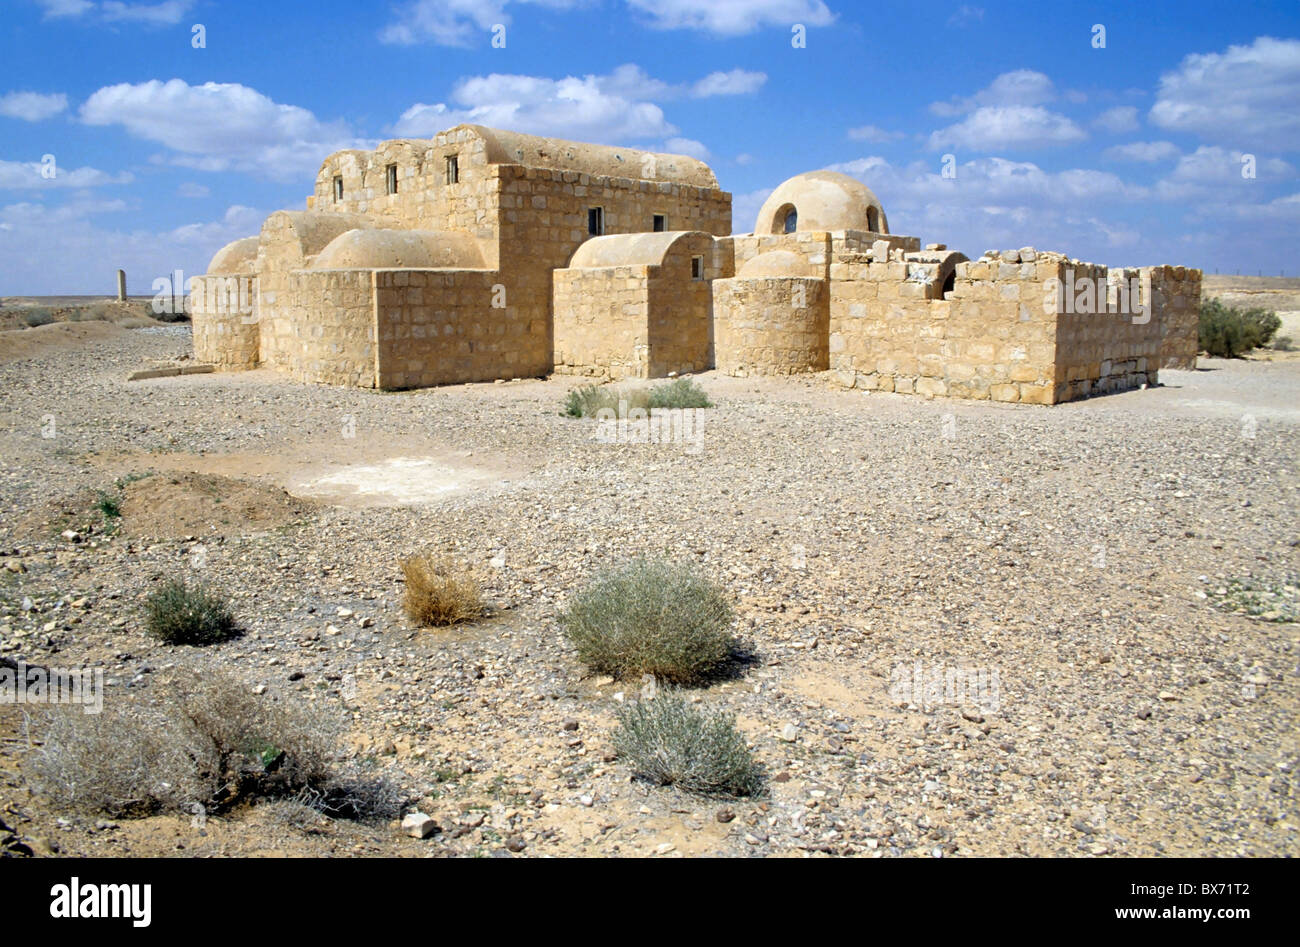 Ruines de Qasr Amra, un 8e siècle château forteresse dans le désert d'Arabie, la Jordanie. Banque D'Images